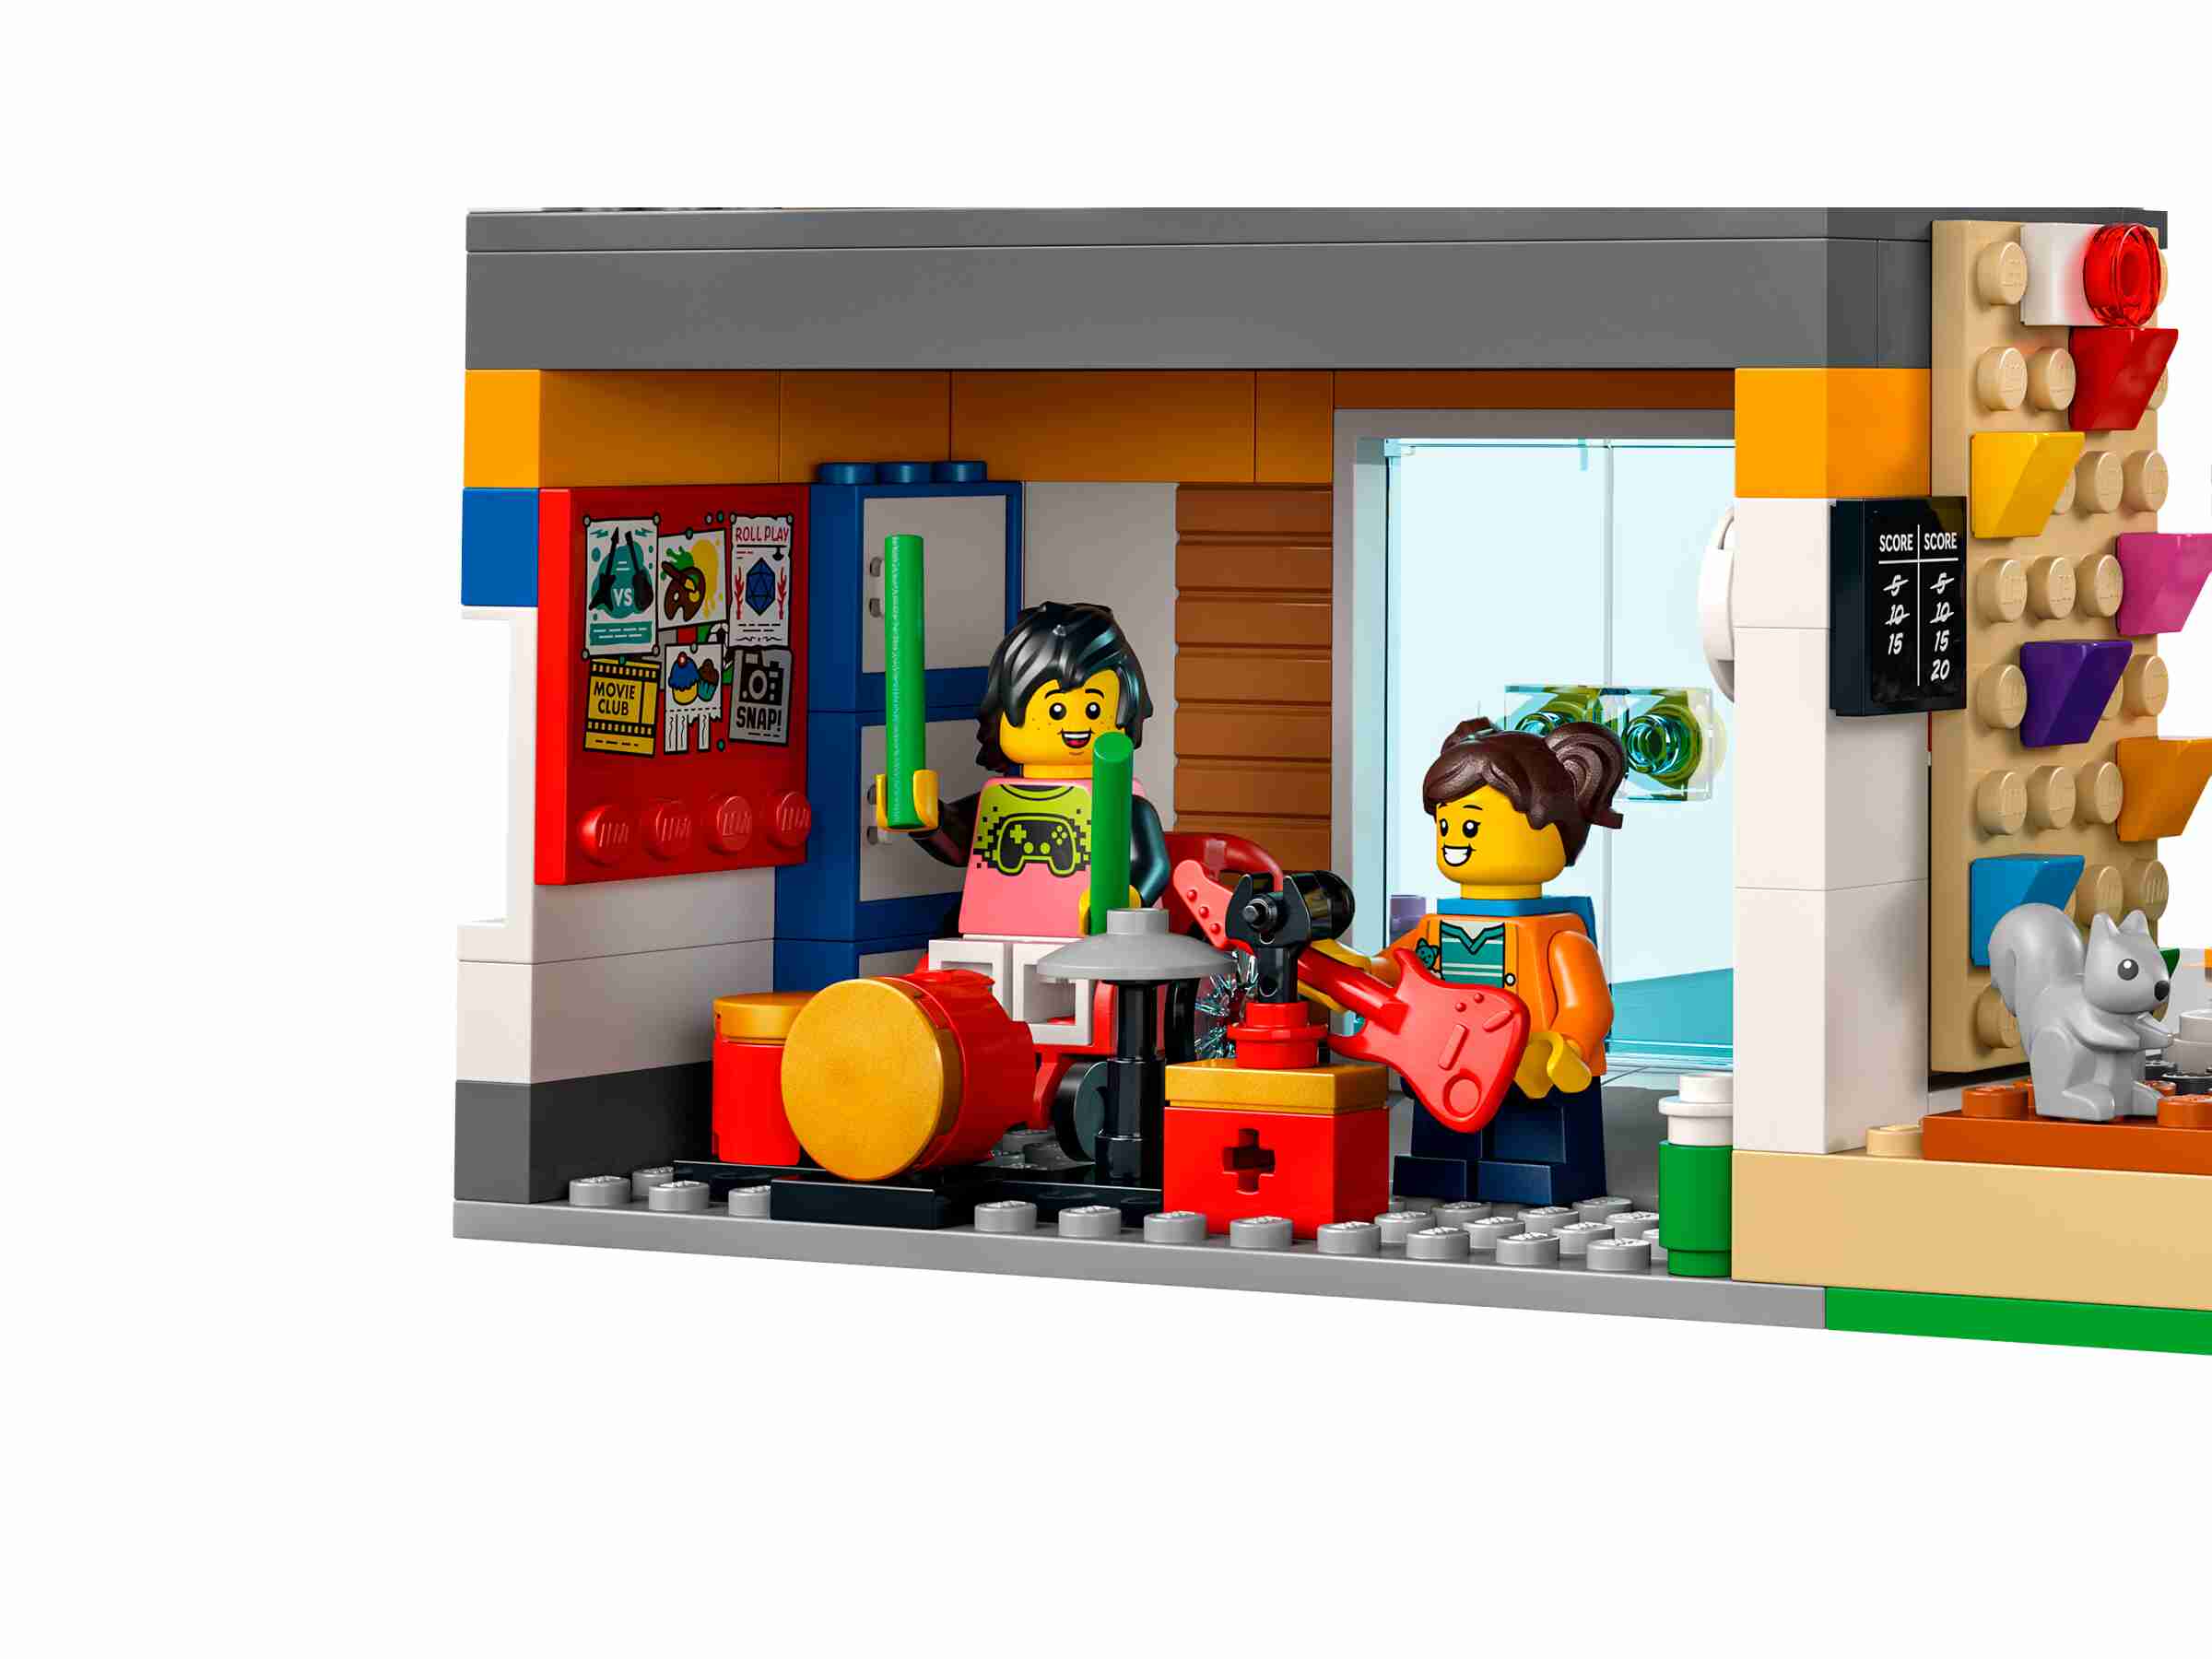 LEGO 60329 City Schule mit Schulbus, 2 Klassenzimmern und Straßenplatten